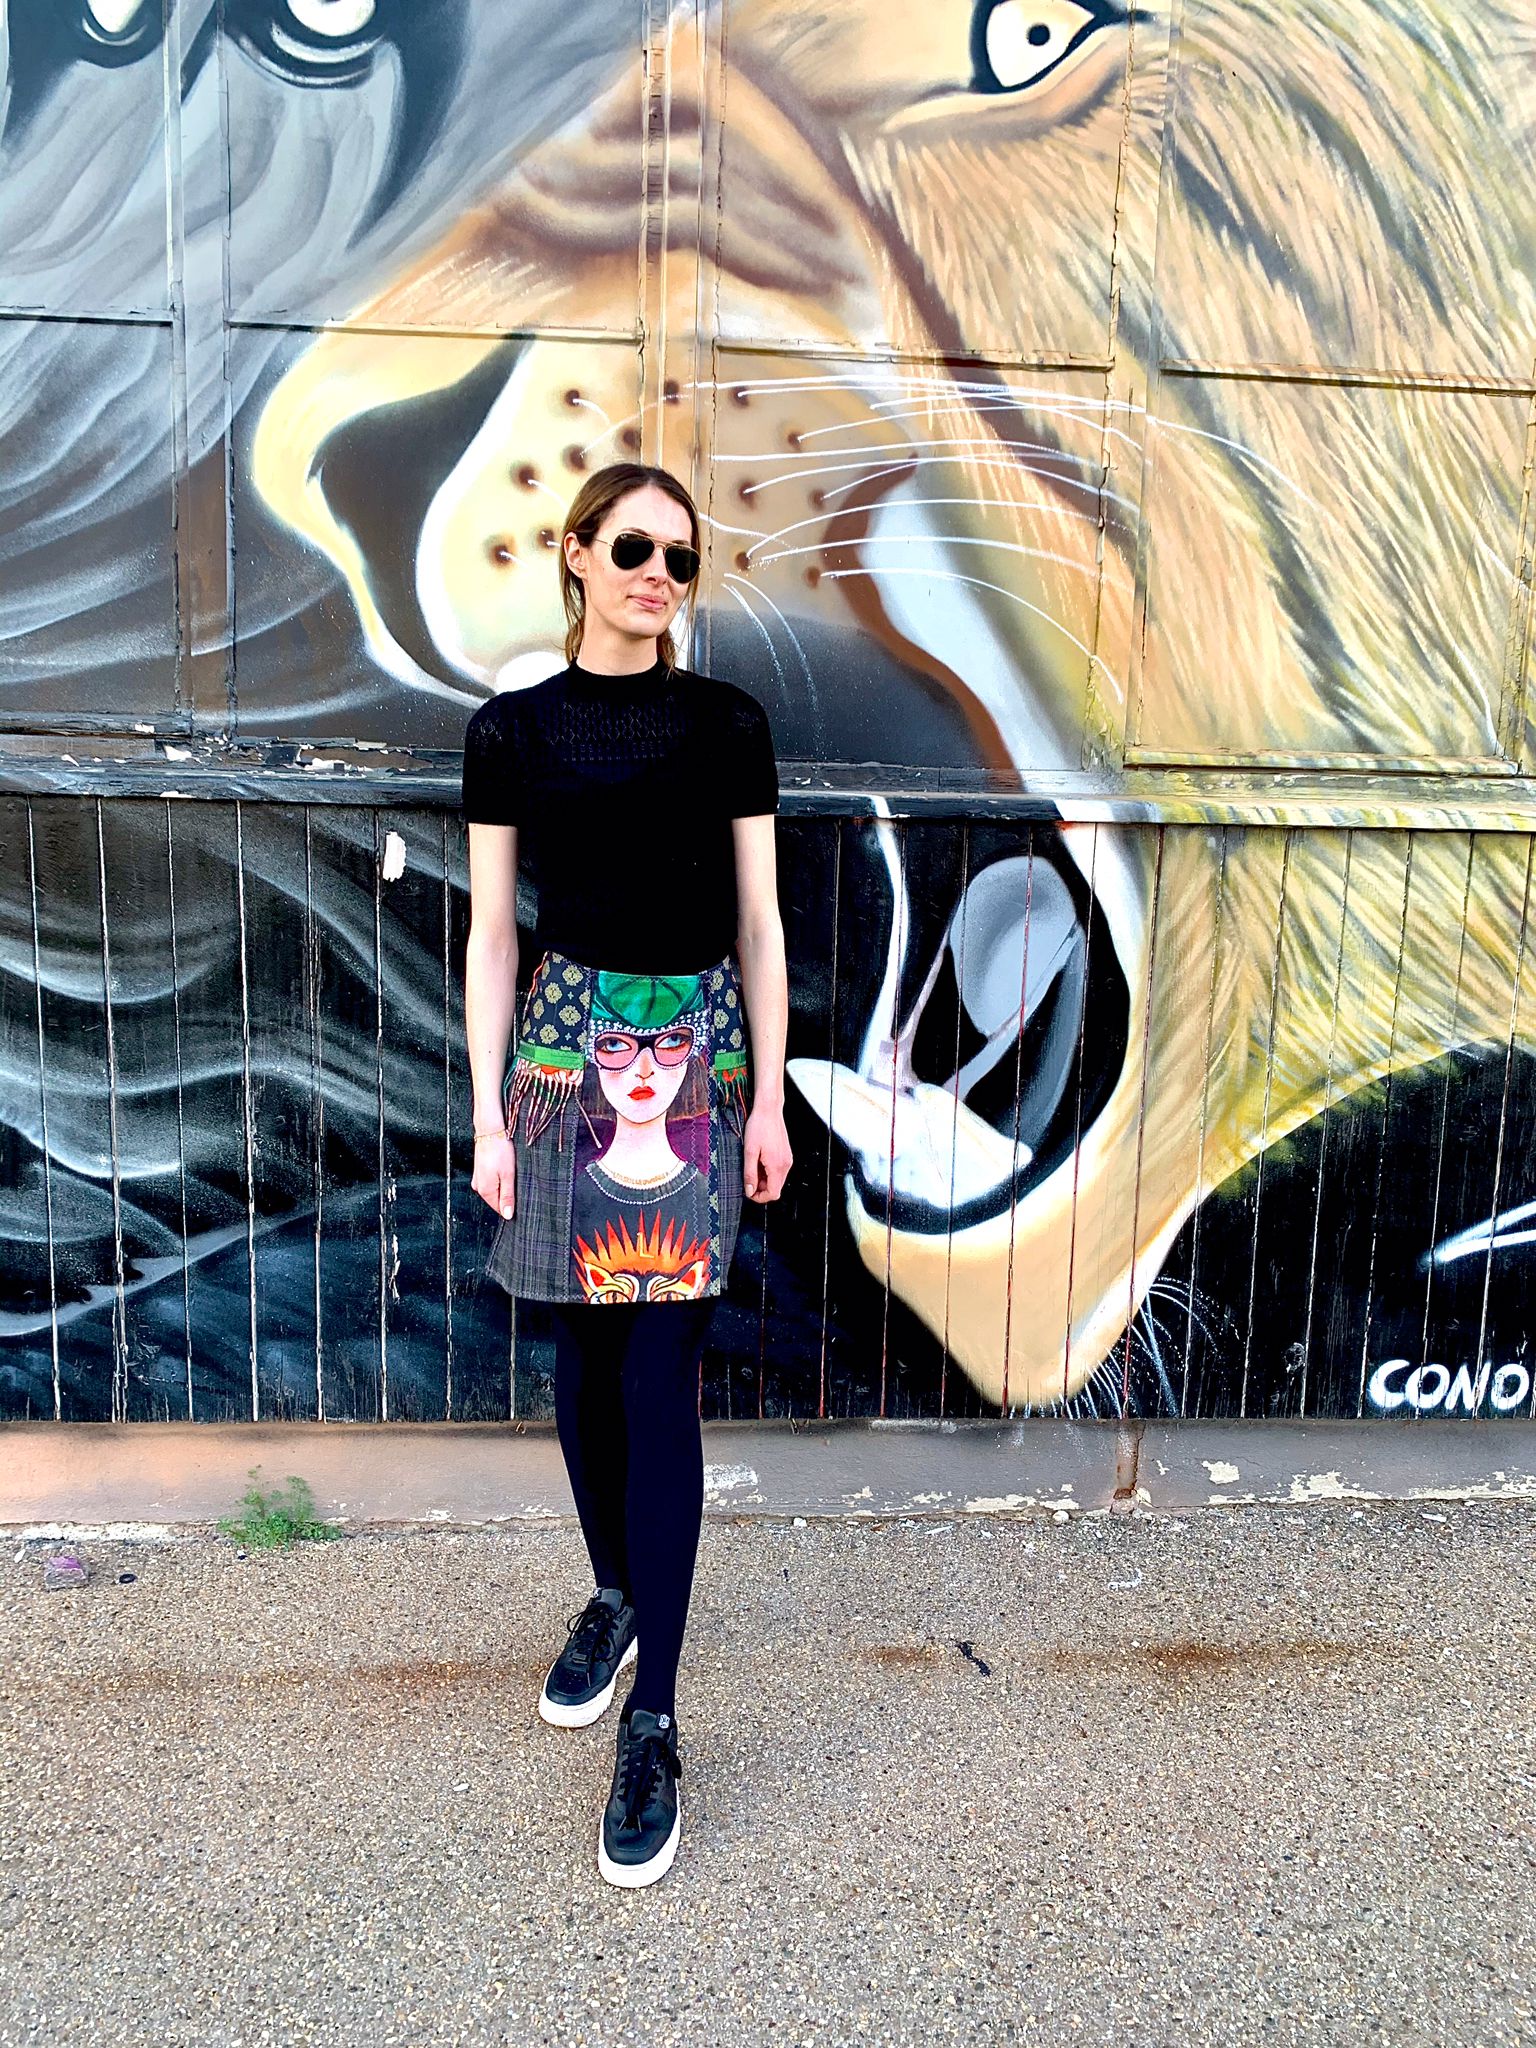 Frau mit Designerrock vor einer Grafitiwand